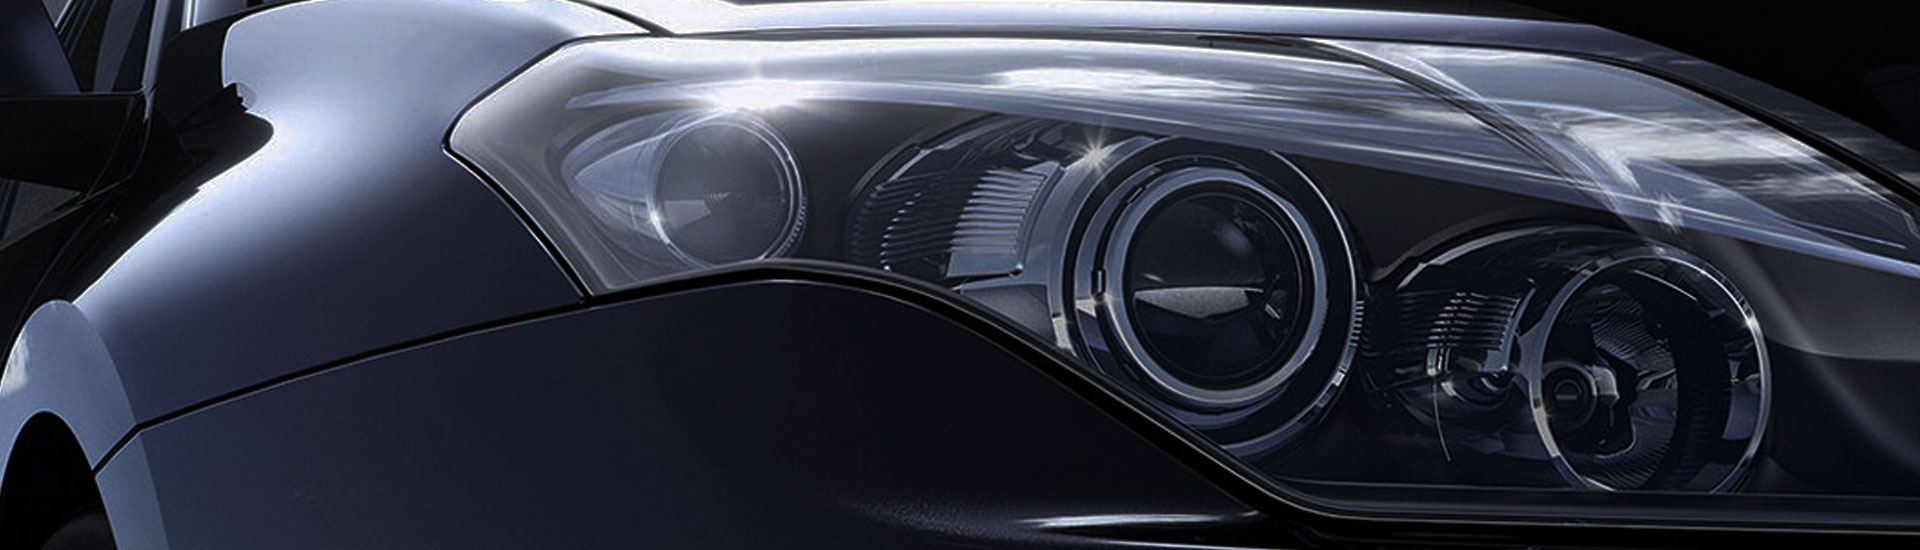 Aston Martin Headlight Tint Covers